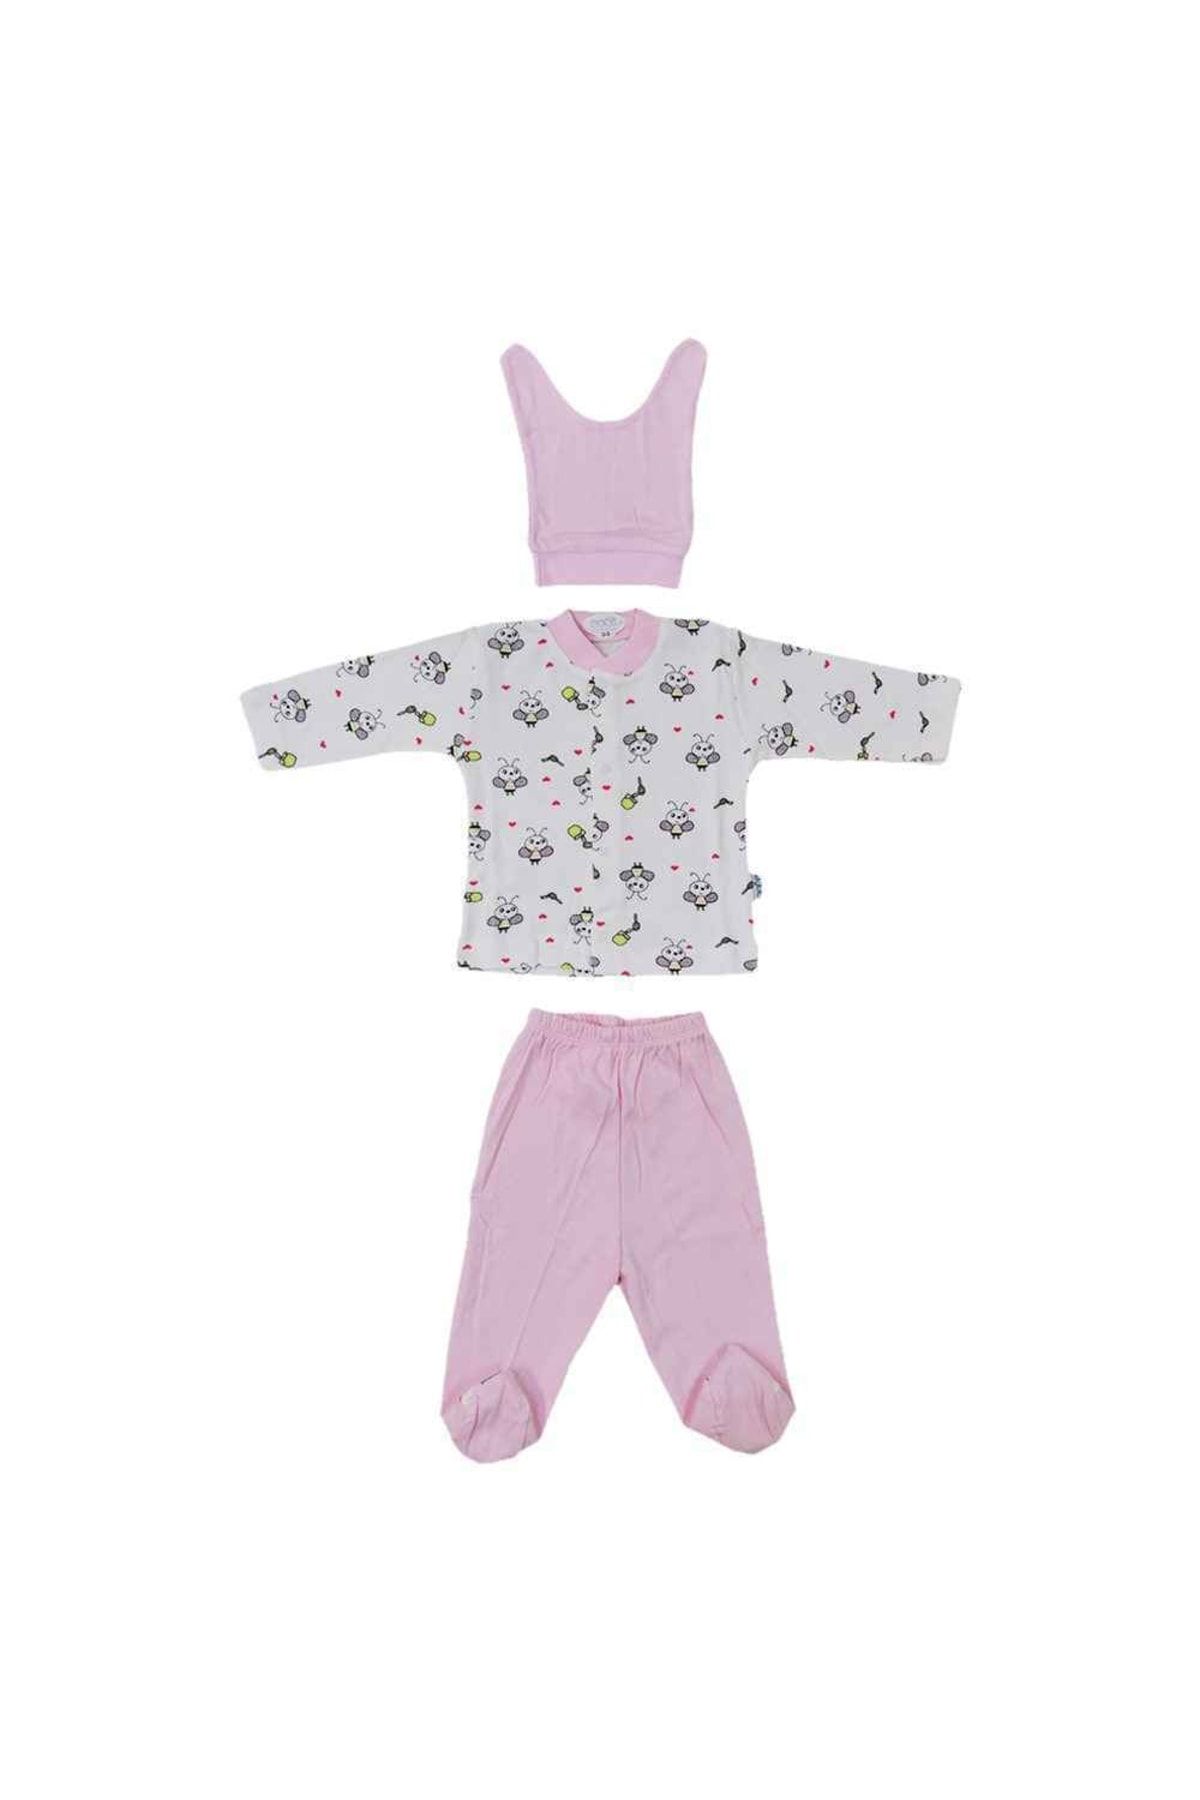 Sebi Bebe Bebek Pijama Takımı Desenli Arı Baskılı